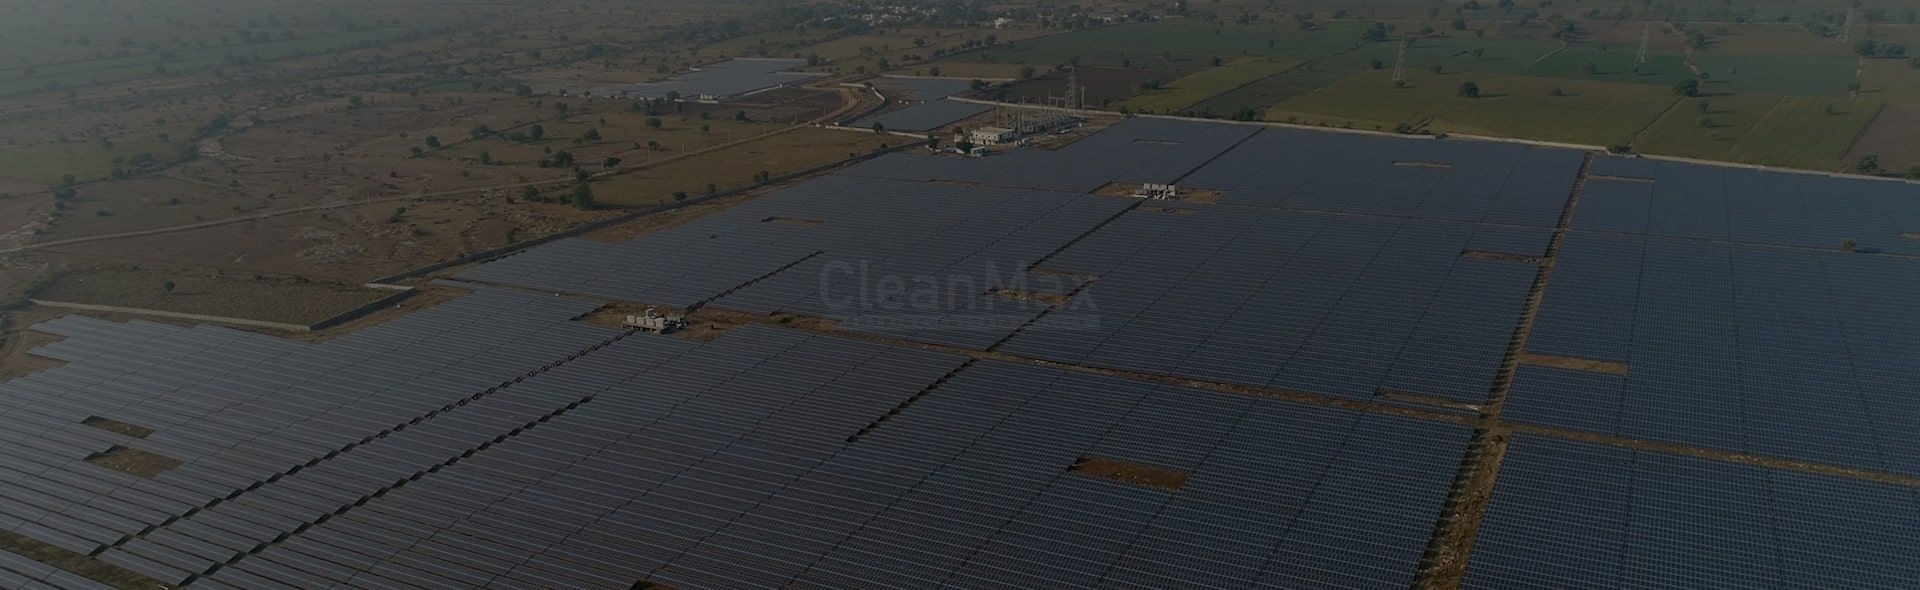 Private Solar farm